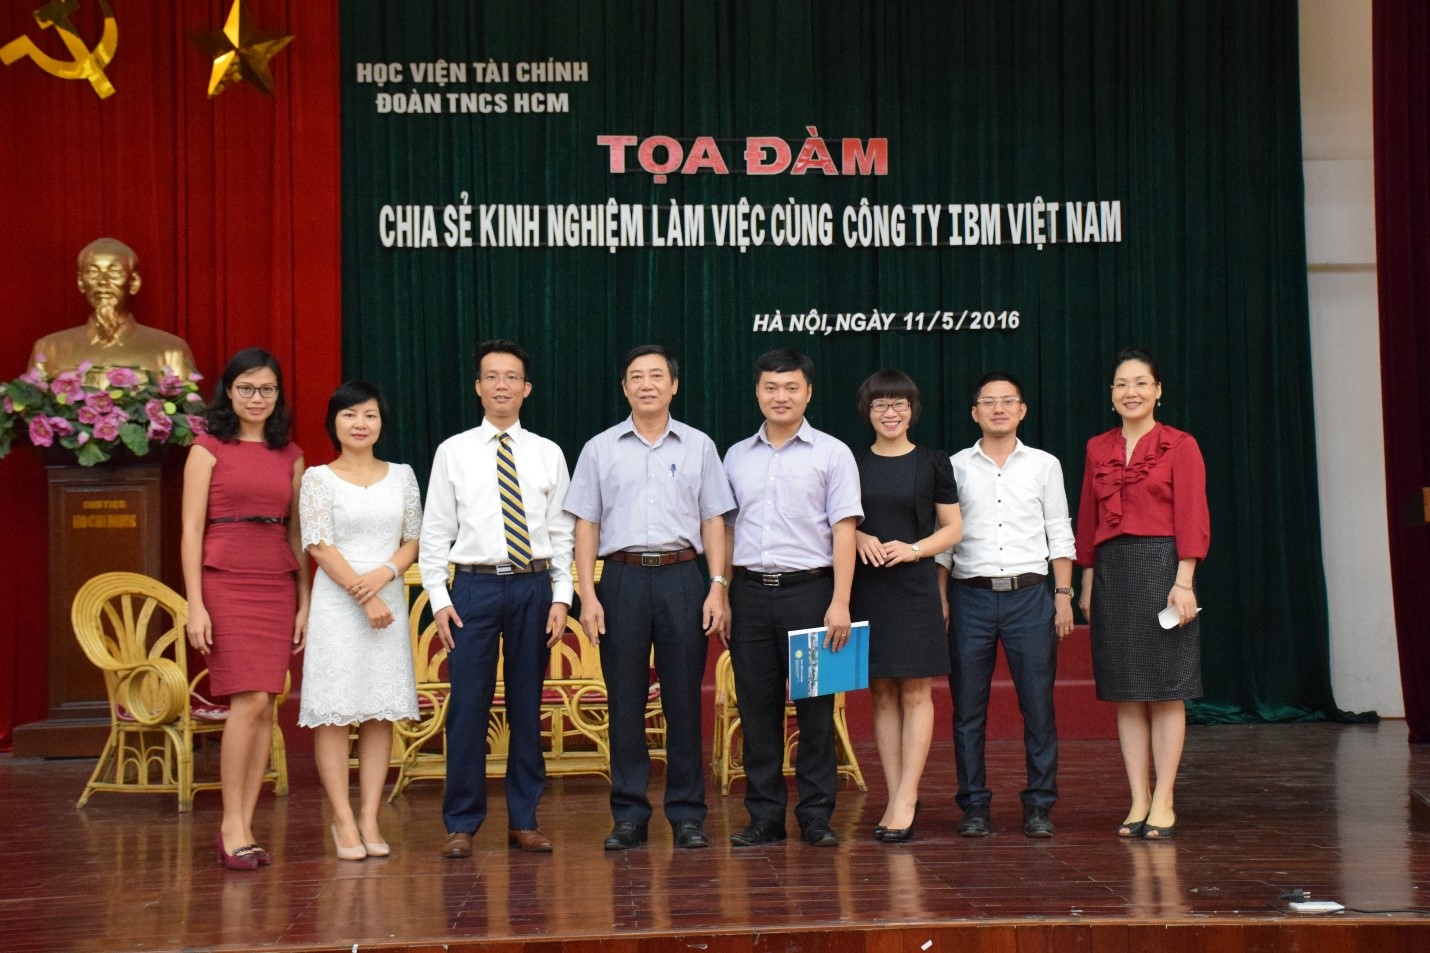 Tổng kết Tọa đàm: Chia sẻ kinh nghiệm làm việc cùng công ty IBM Việt Nam